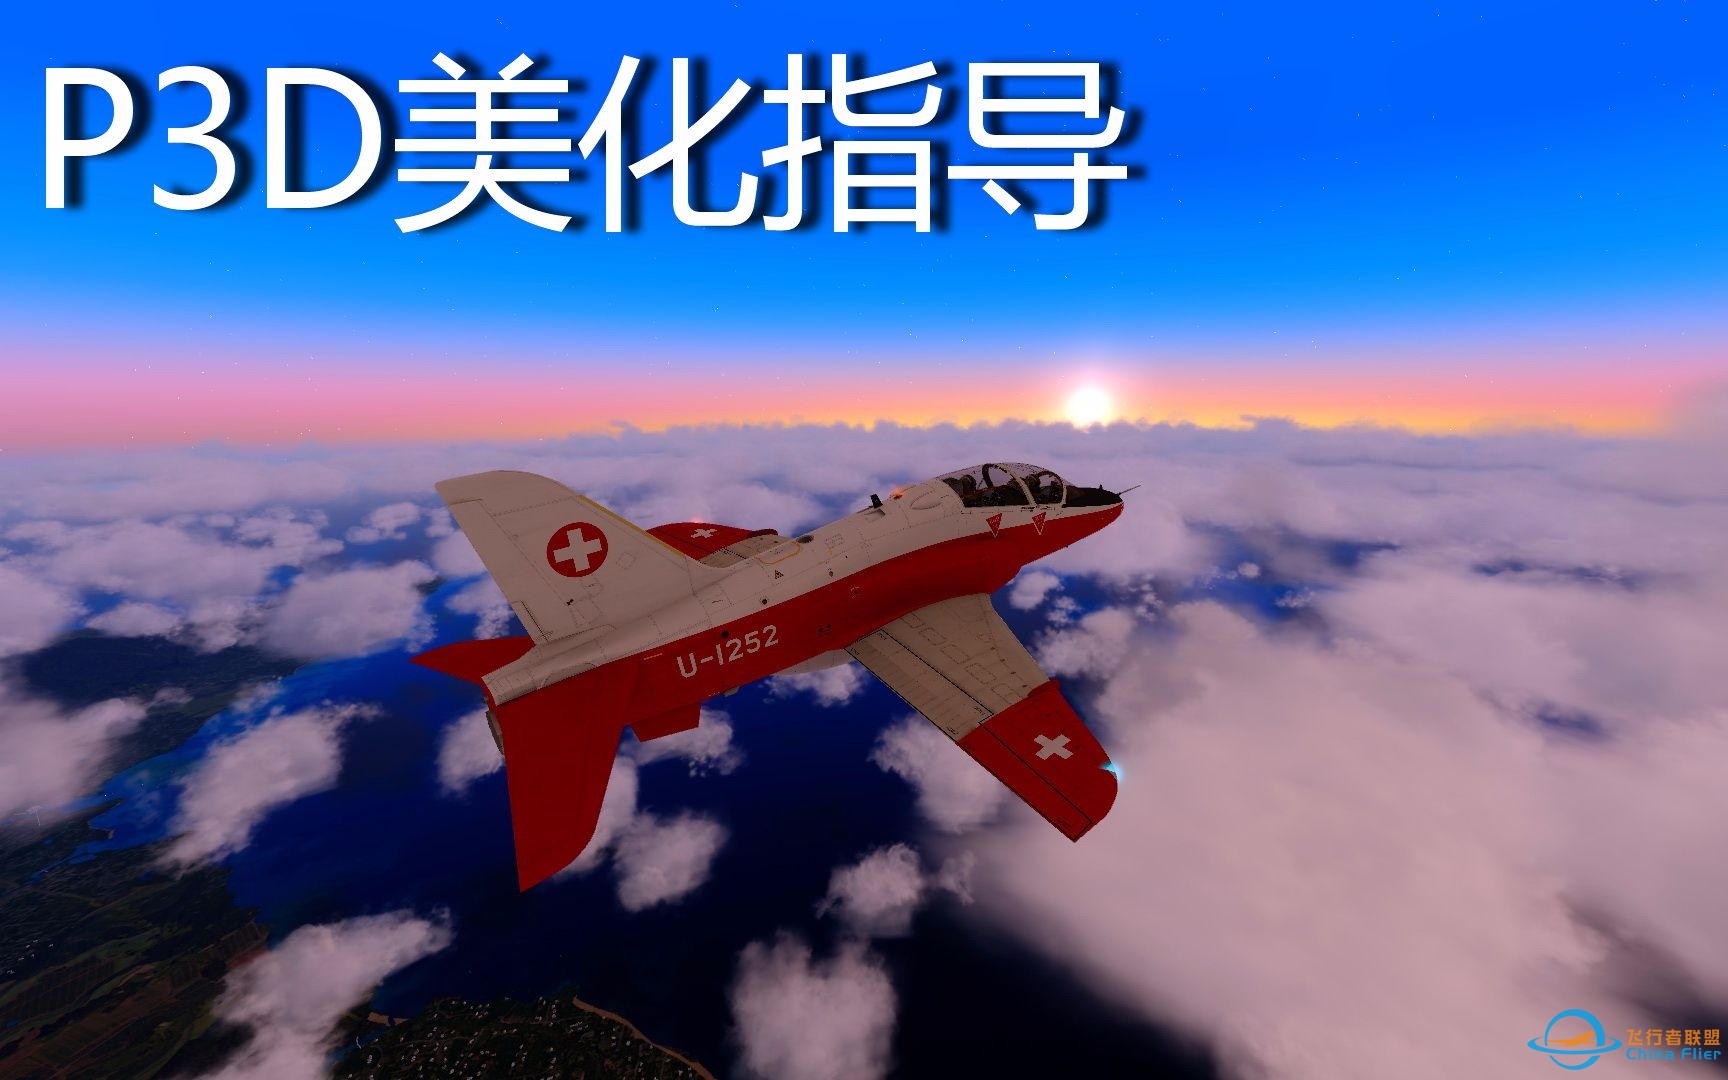 【Prepar3D】P3D美化指导教程 附檀香山测试飞行（P3D飞行模拟）-1241 